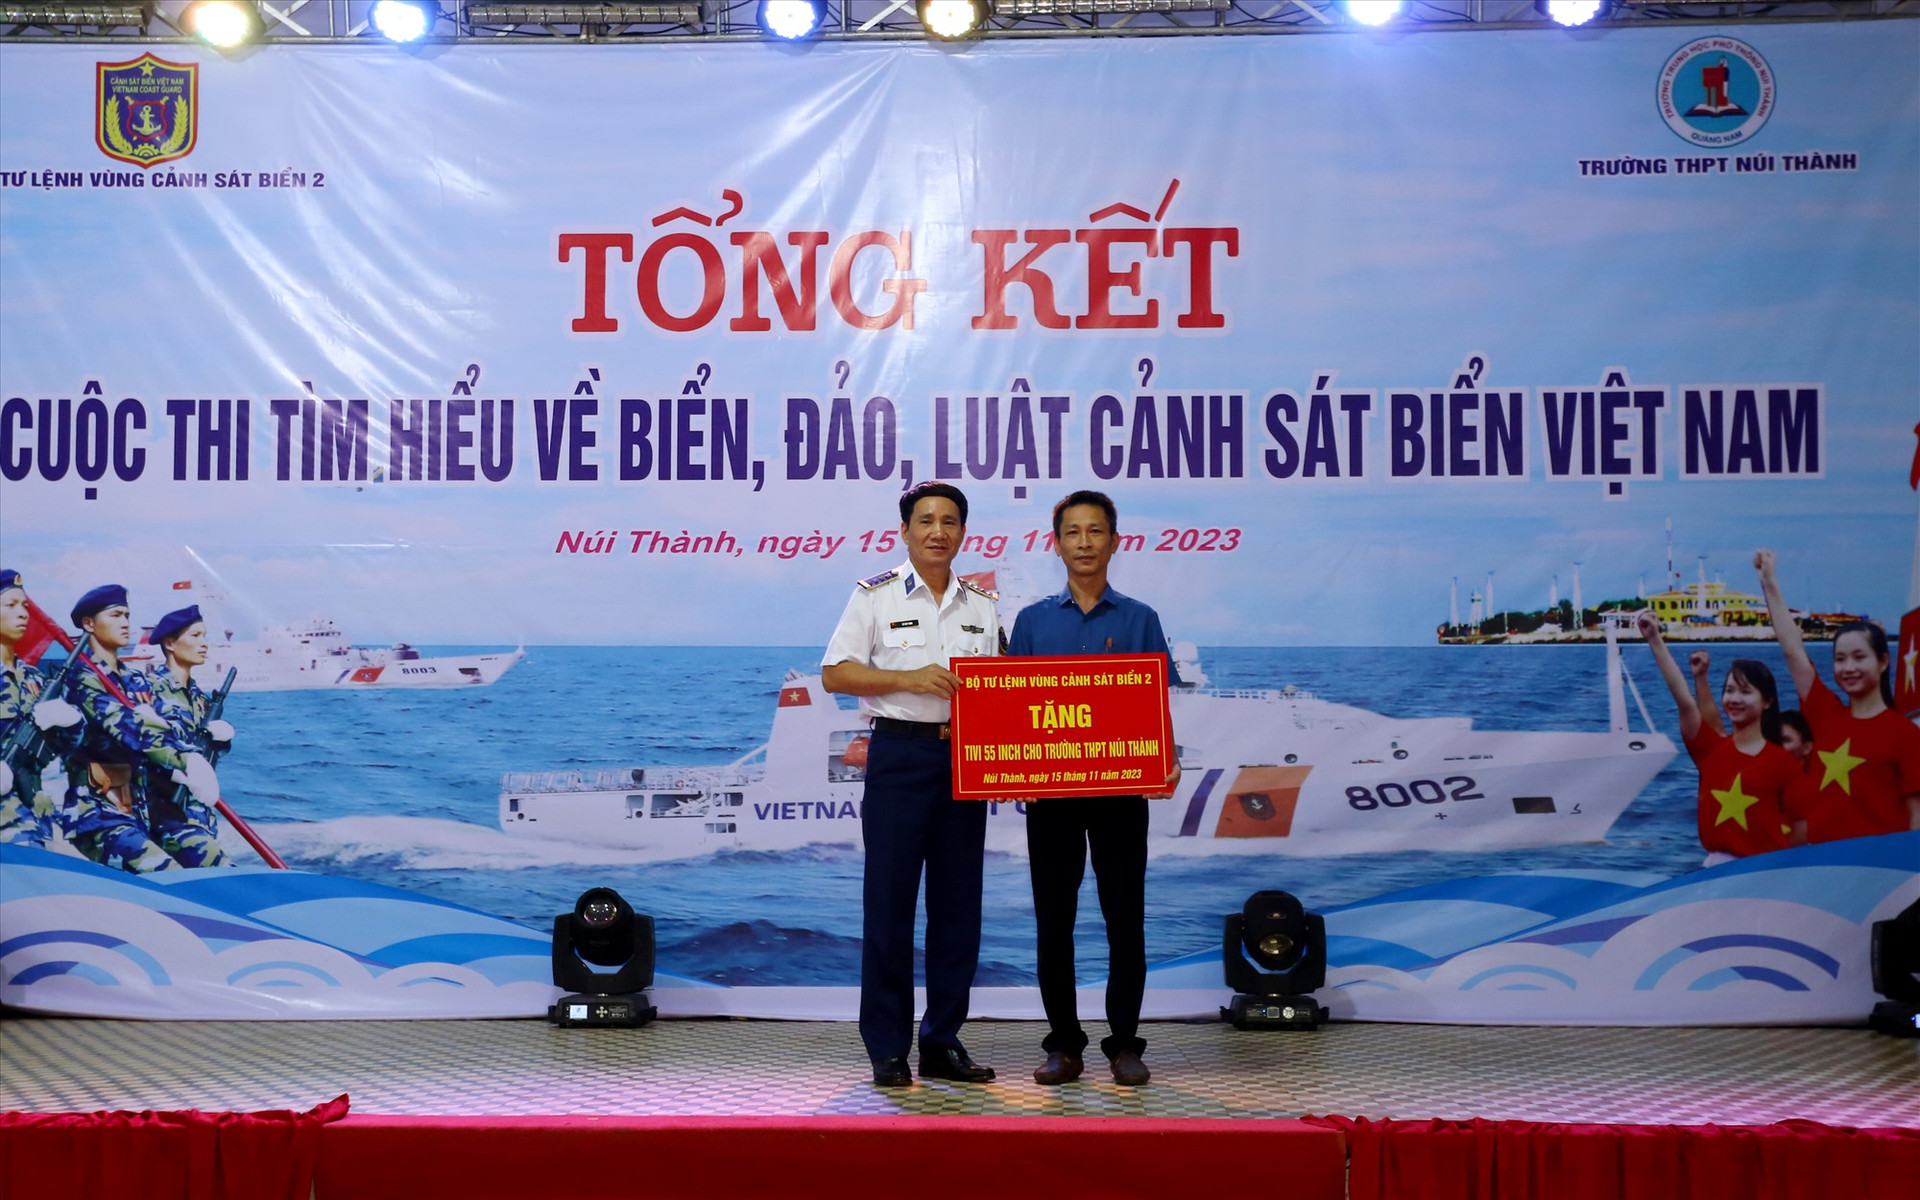 Bộ Tư lệnh Vùng Cảnh sát biển 2 trao tặng tivi cho trường THPT Núi Thành. Ảnh: T.C